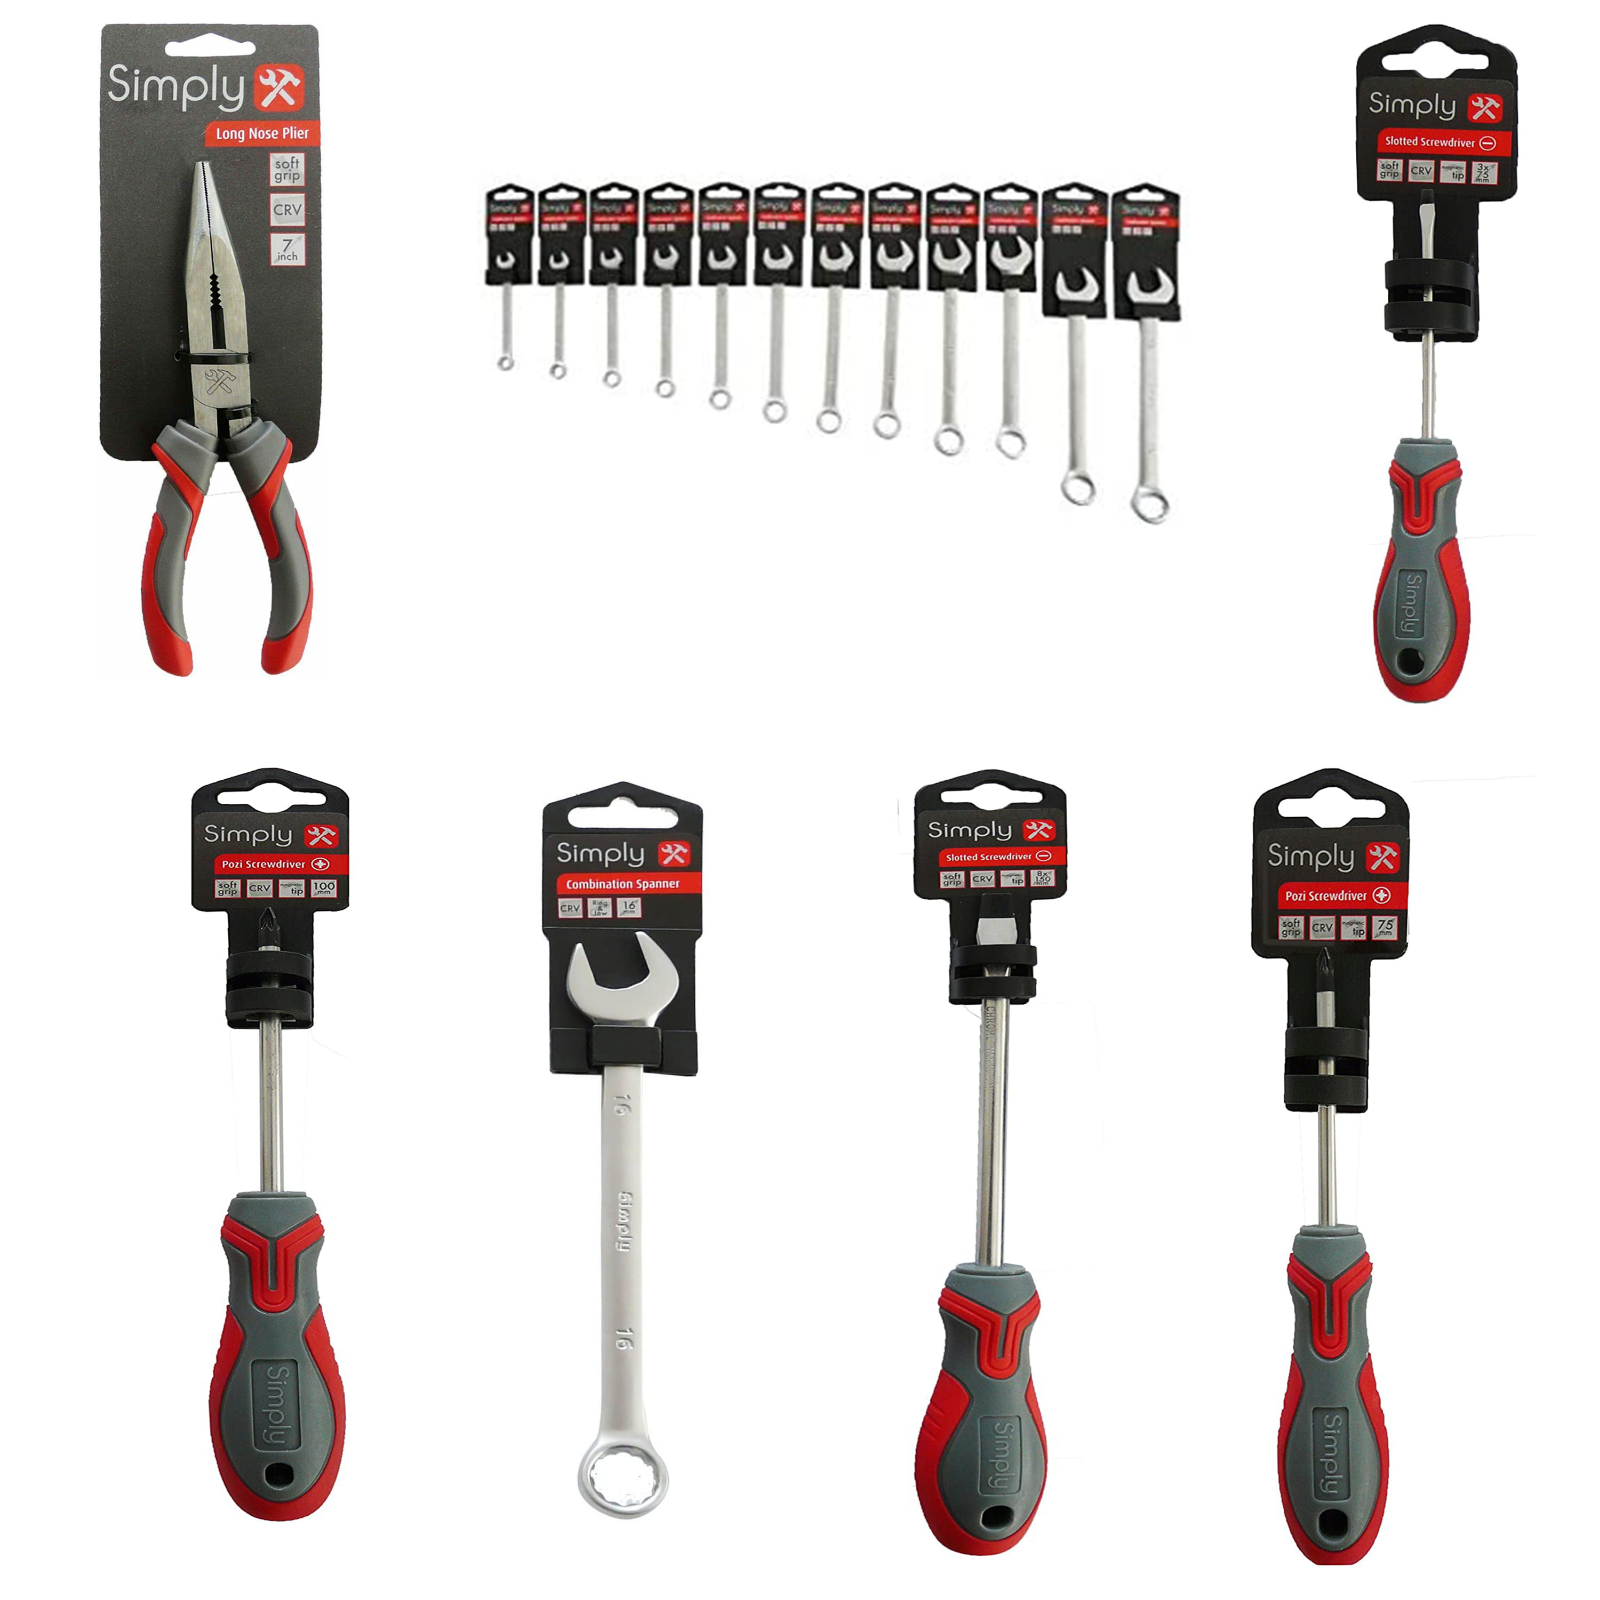 Assorted Bike / DIY / Hobby Tools - Magnetic Screwdrivers & Spanners - Multi Buy - Sportandleisure.com (6968009490586)